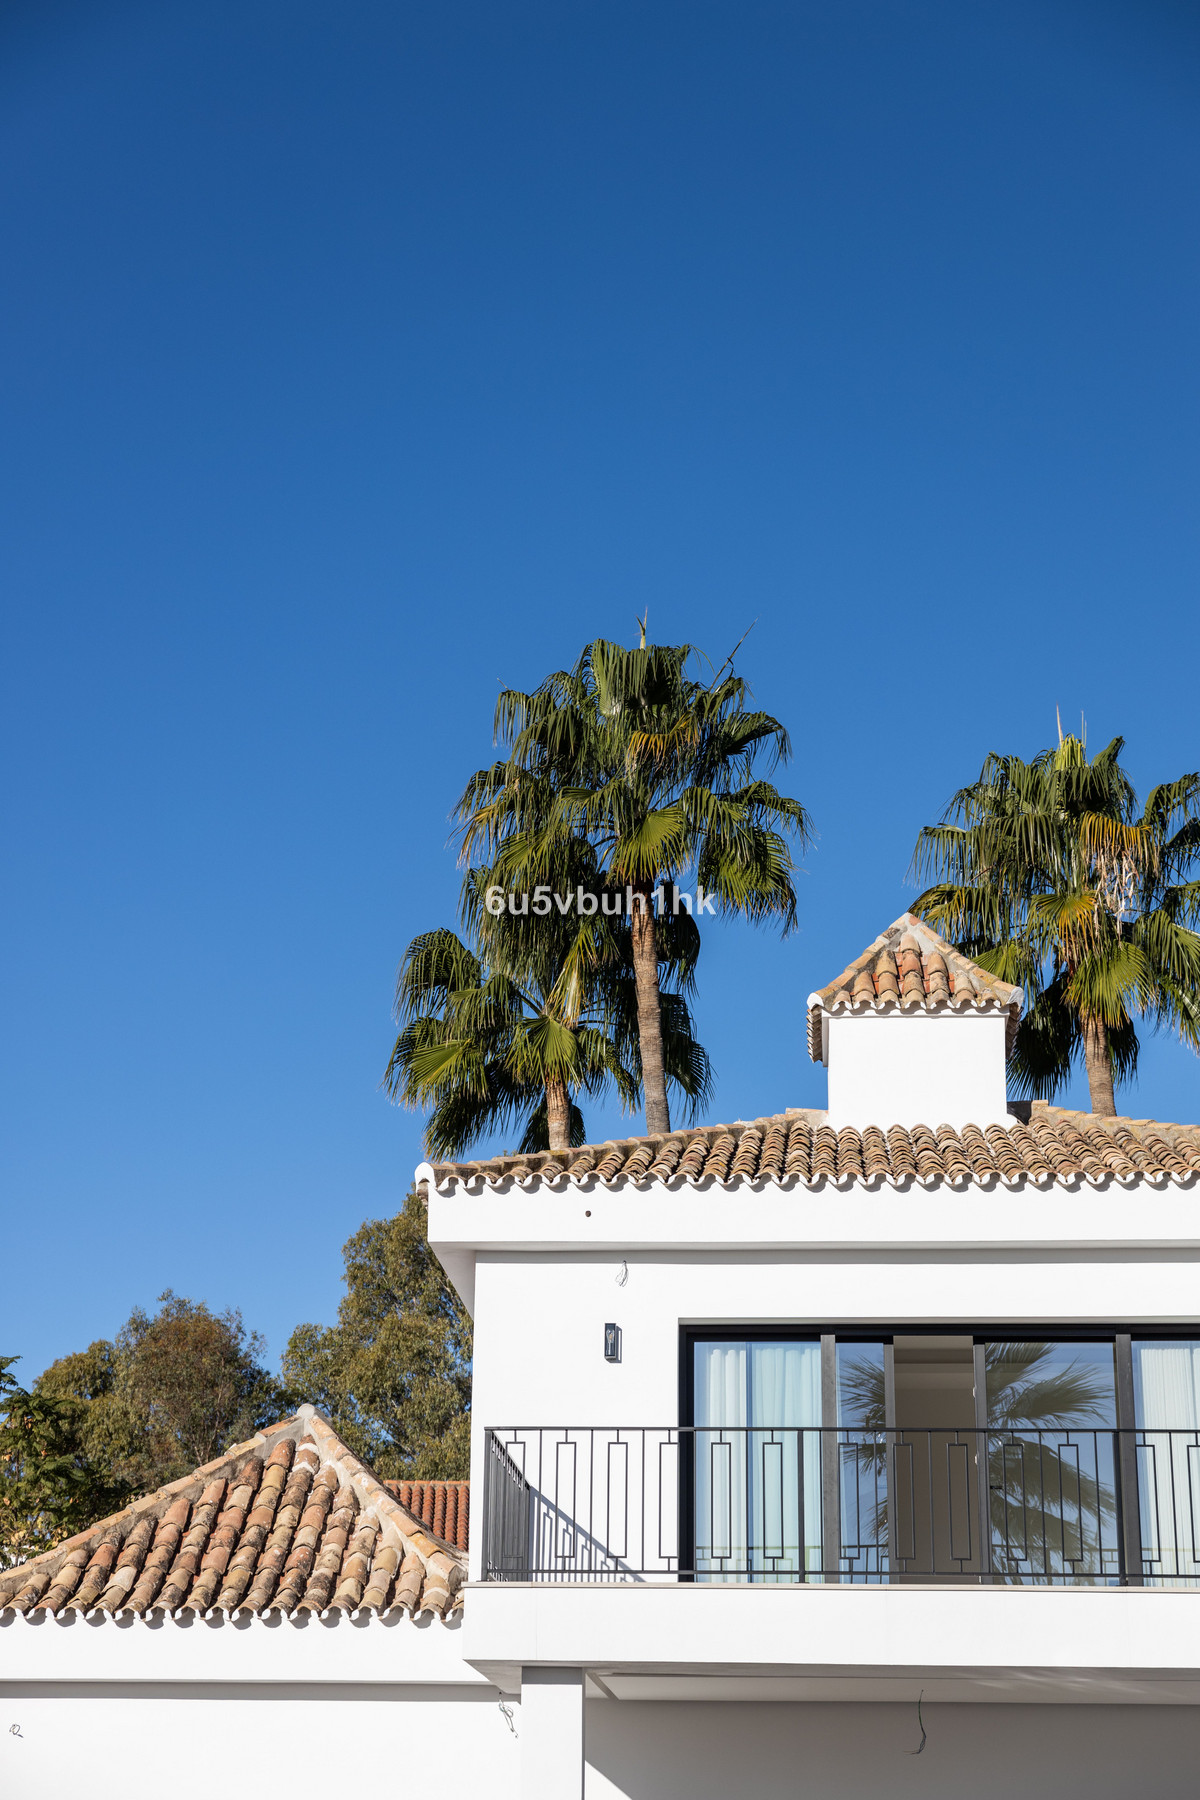 5 Bedroom Villa For Sale, Marbella